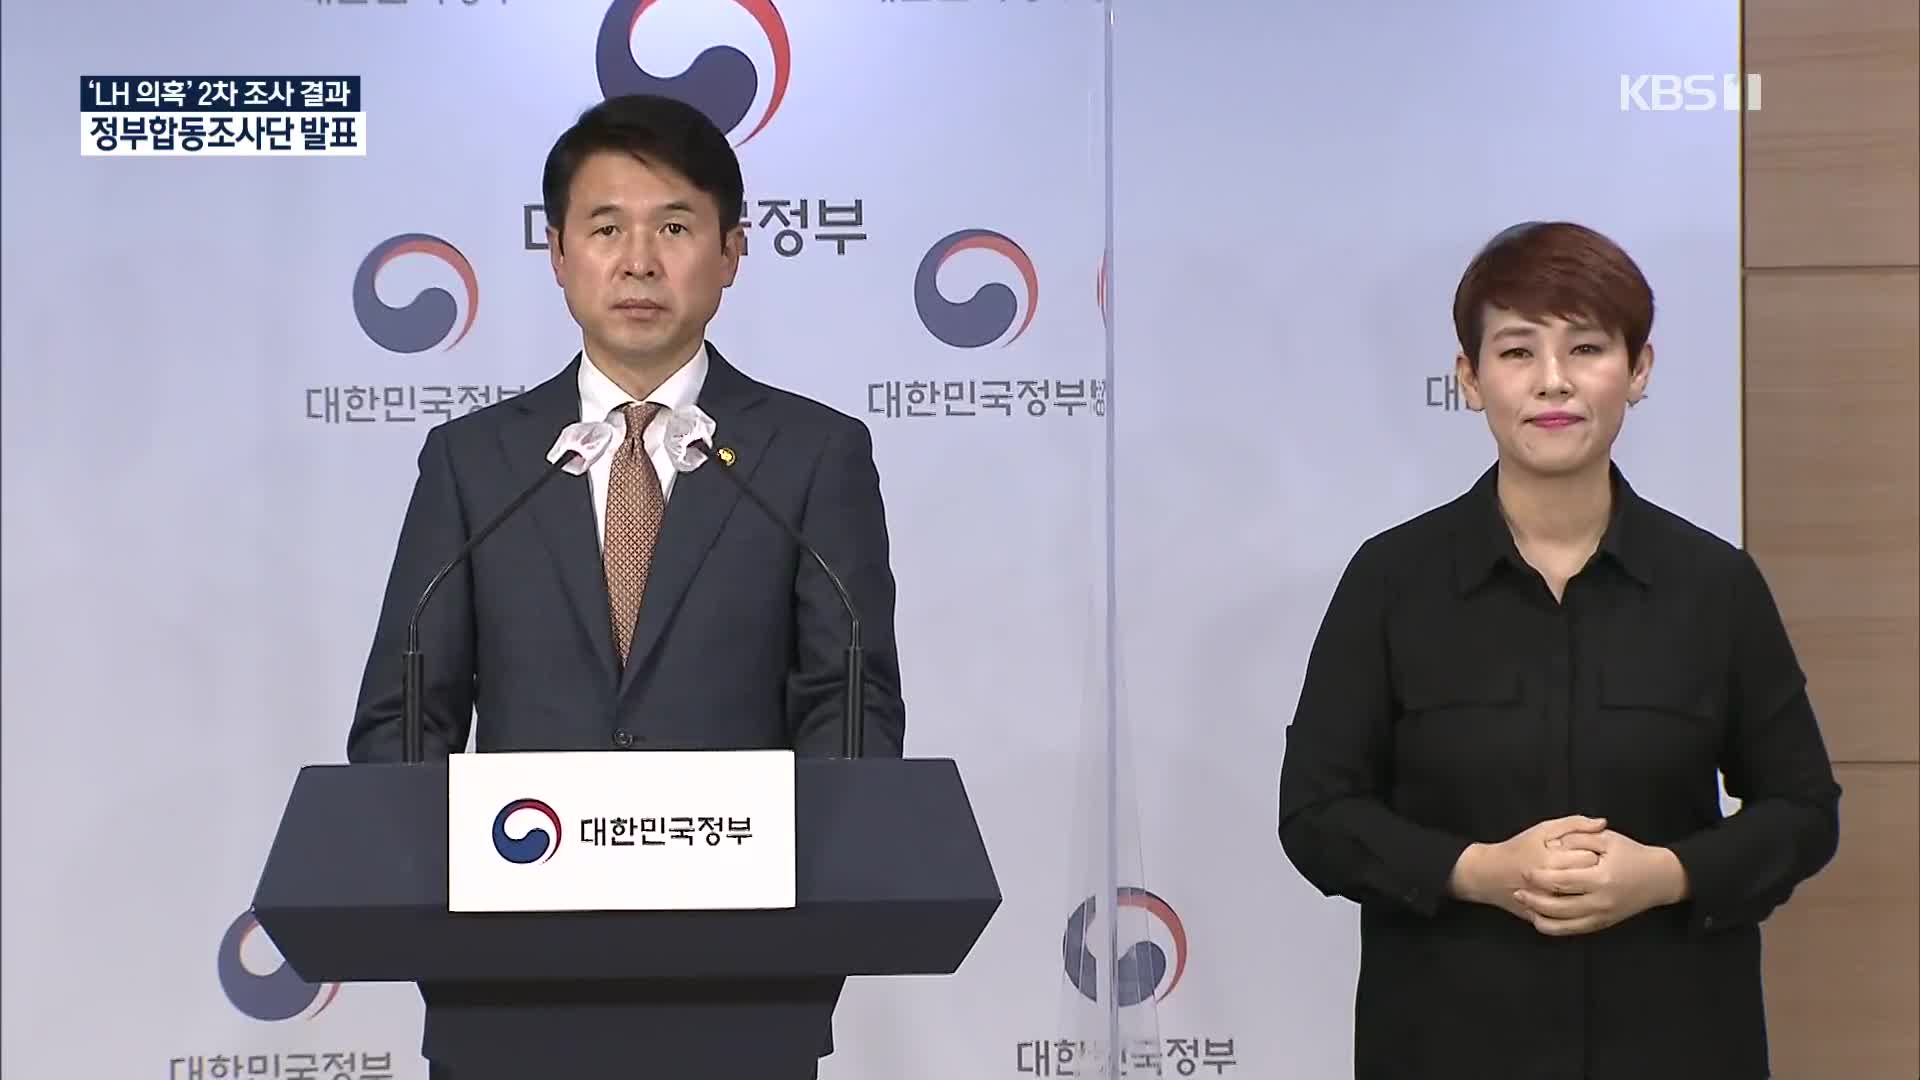 [영상] LH의혹 정부 합동조사단 2차 조사결과 발표